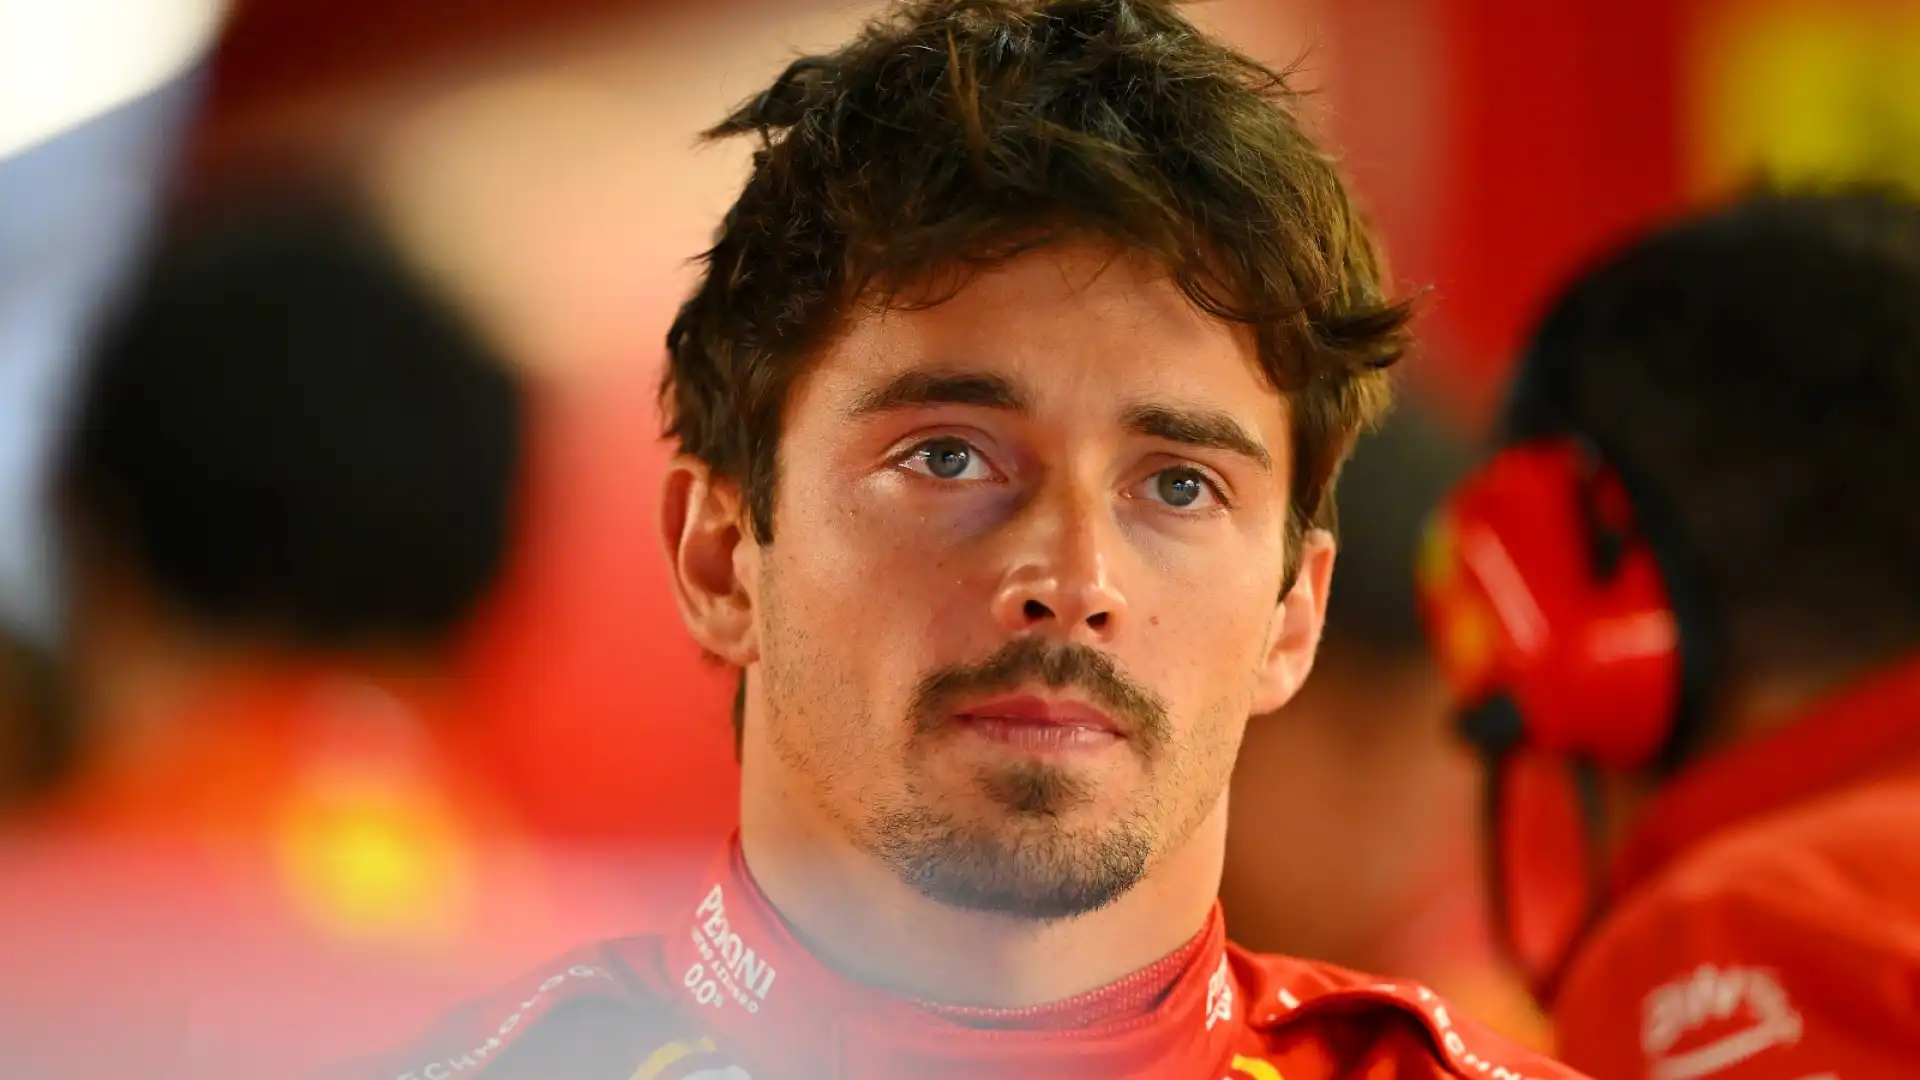 Leclerc è arrabbiato soprattutto con se stesso a causa delle qualifiche di sabato: "Devo capire cosa sbaglio"